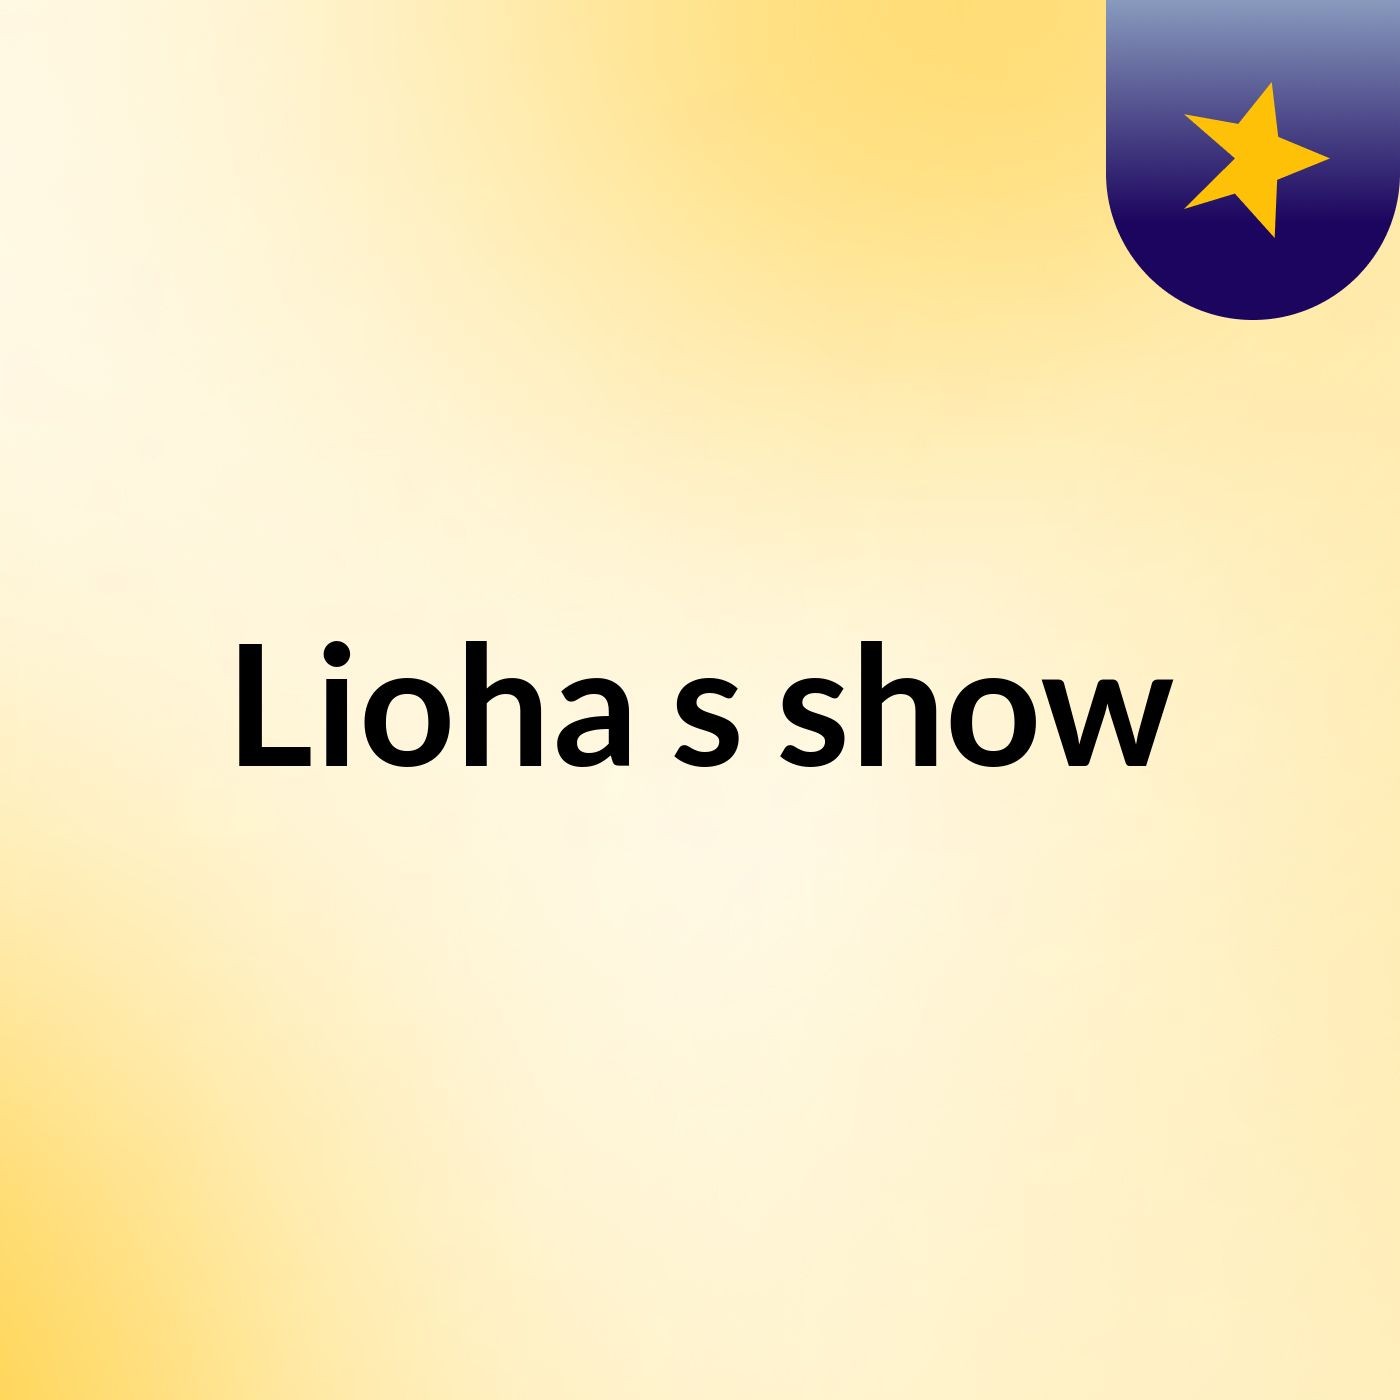 Lioha's show